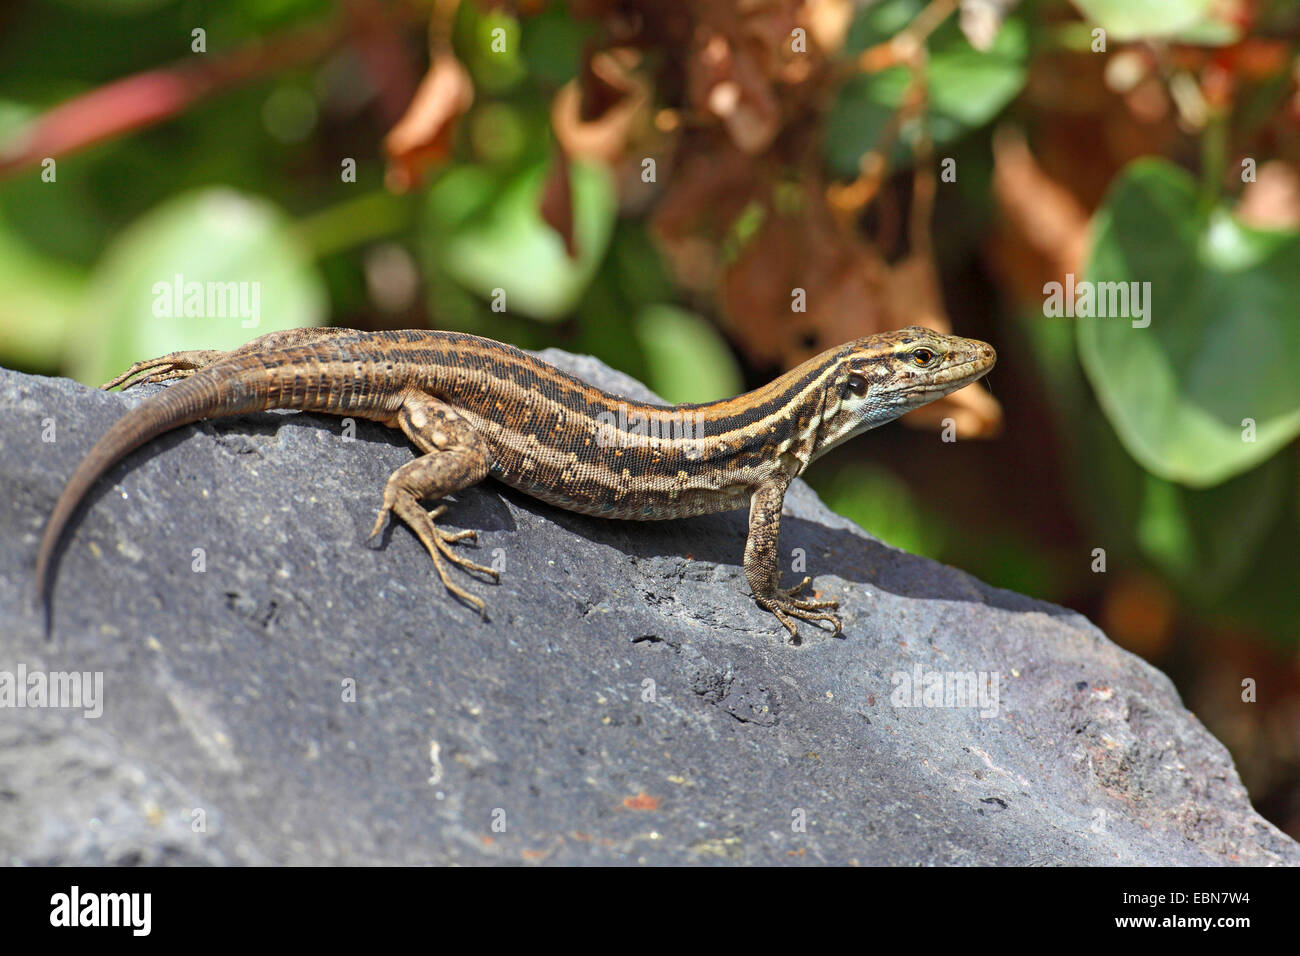 Canary Island Lizard (Gallotia galloti galloti), female sitting on a stone, Canary Islands, La Palma Stock Photo